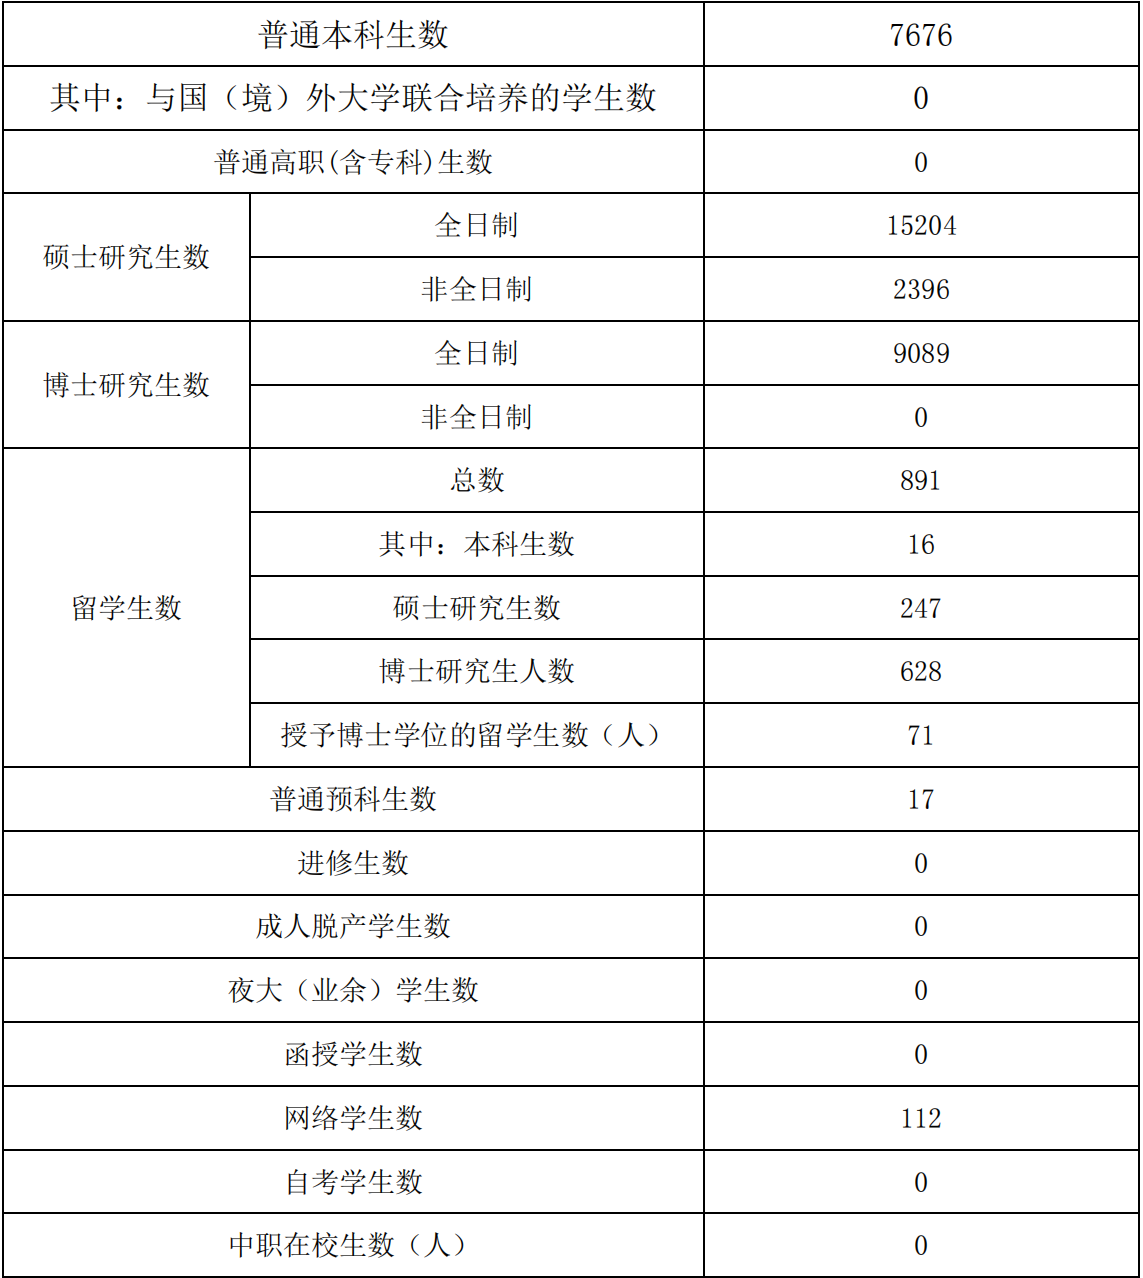 中国科学技术大学：本科生占比不到1/4，适合喜欢数理化的尖子生